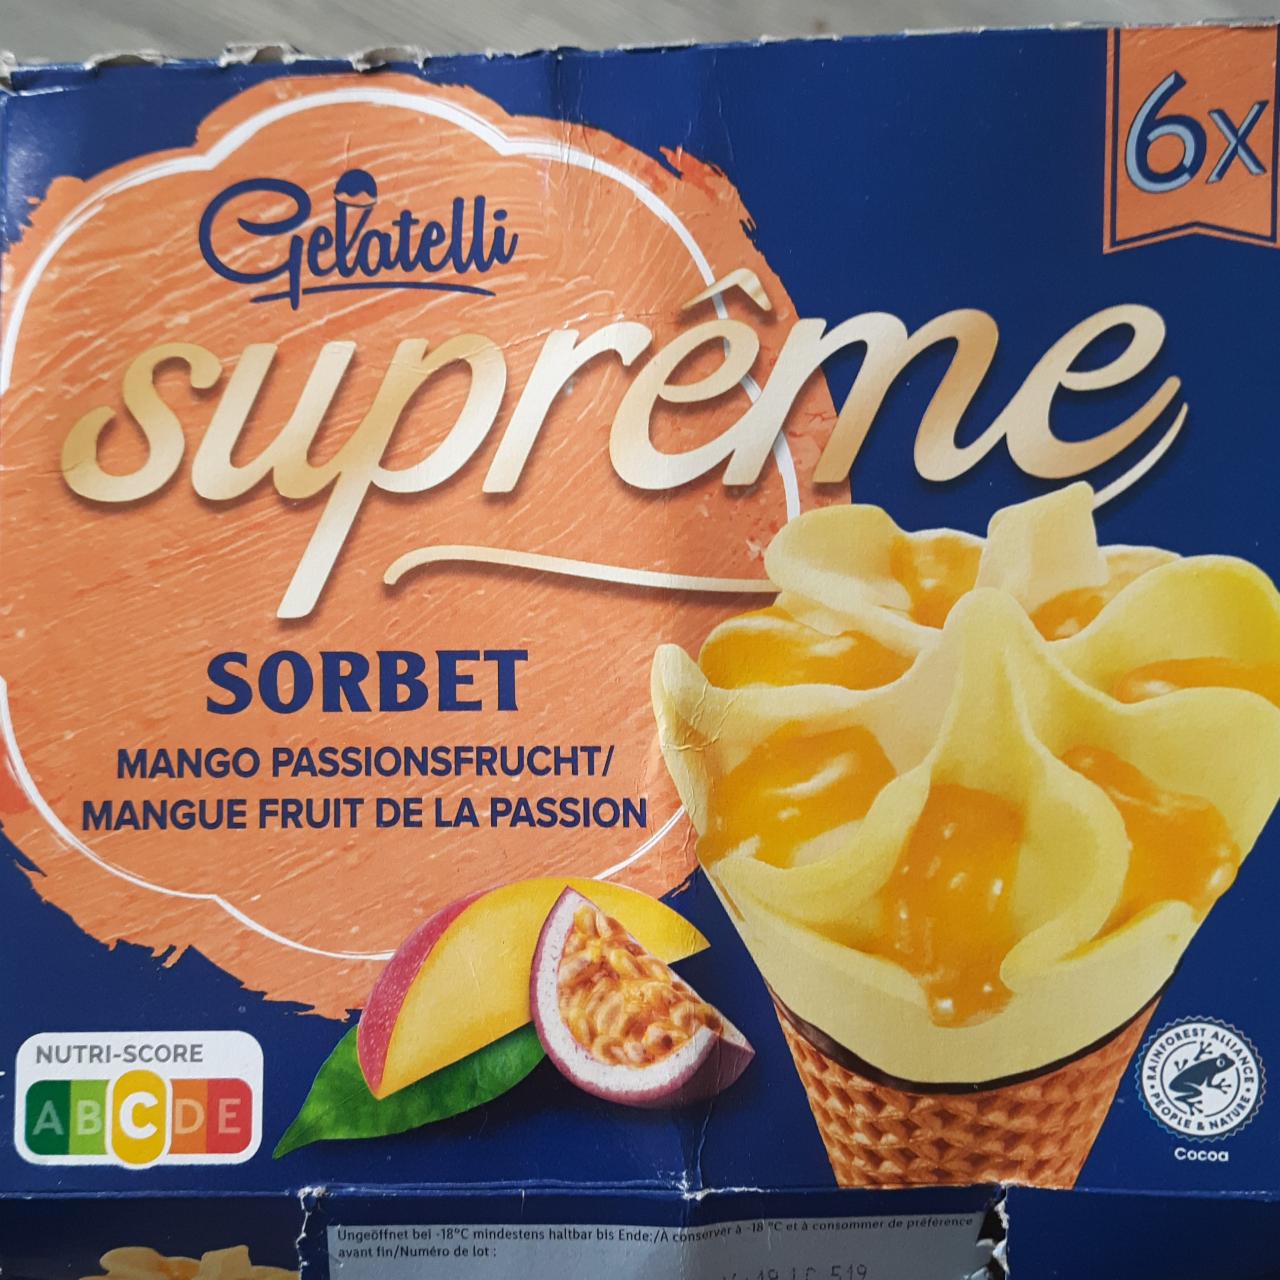 Fotografie - Sorbet cones supreme Mango & Passion fruit Gelatelli